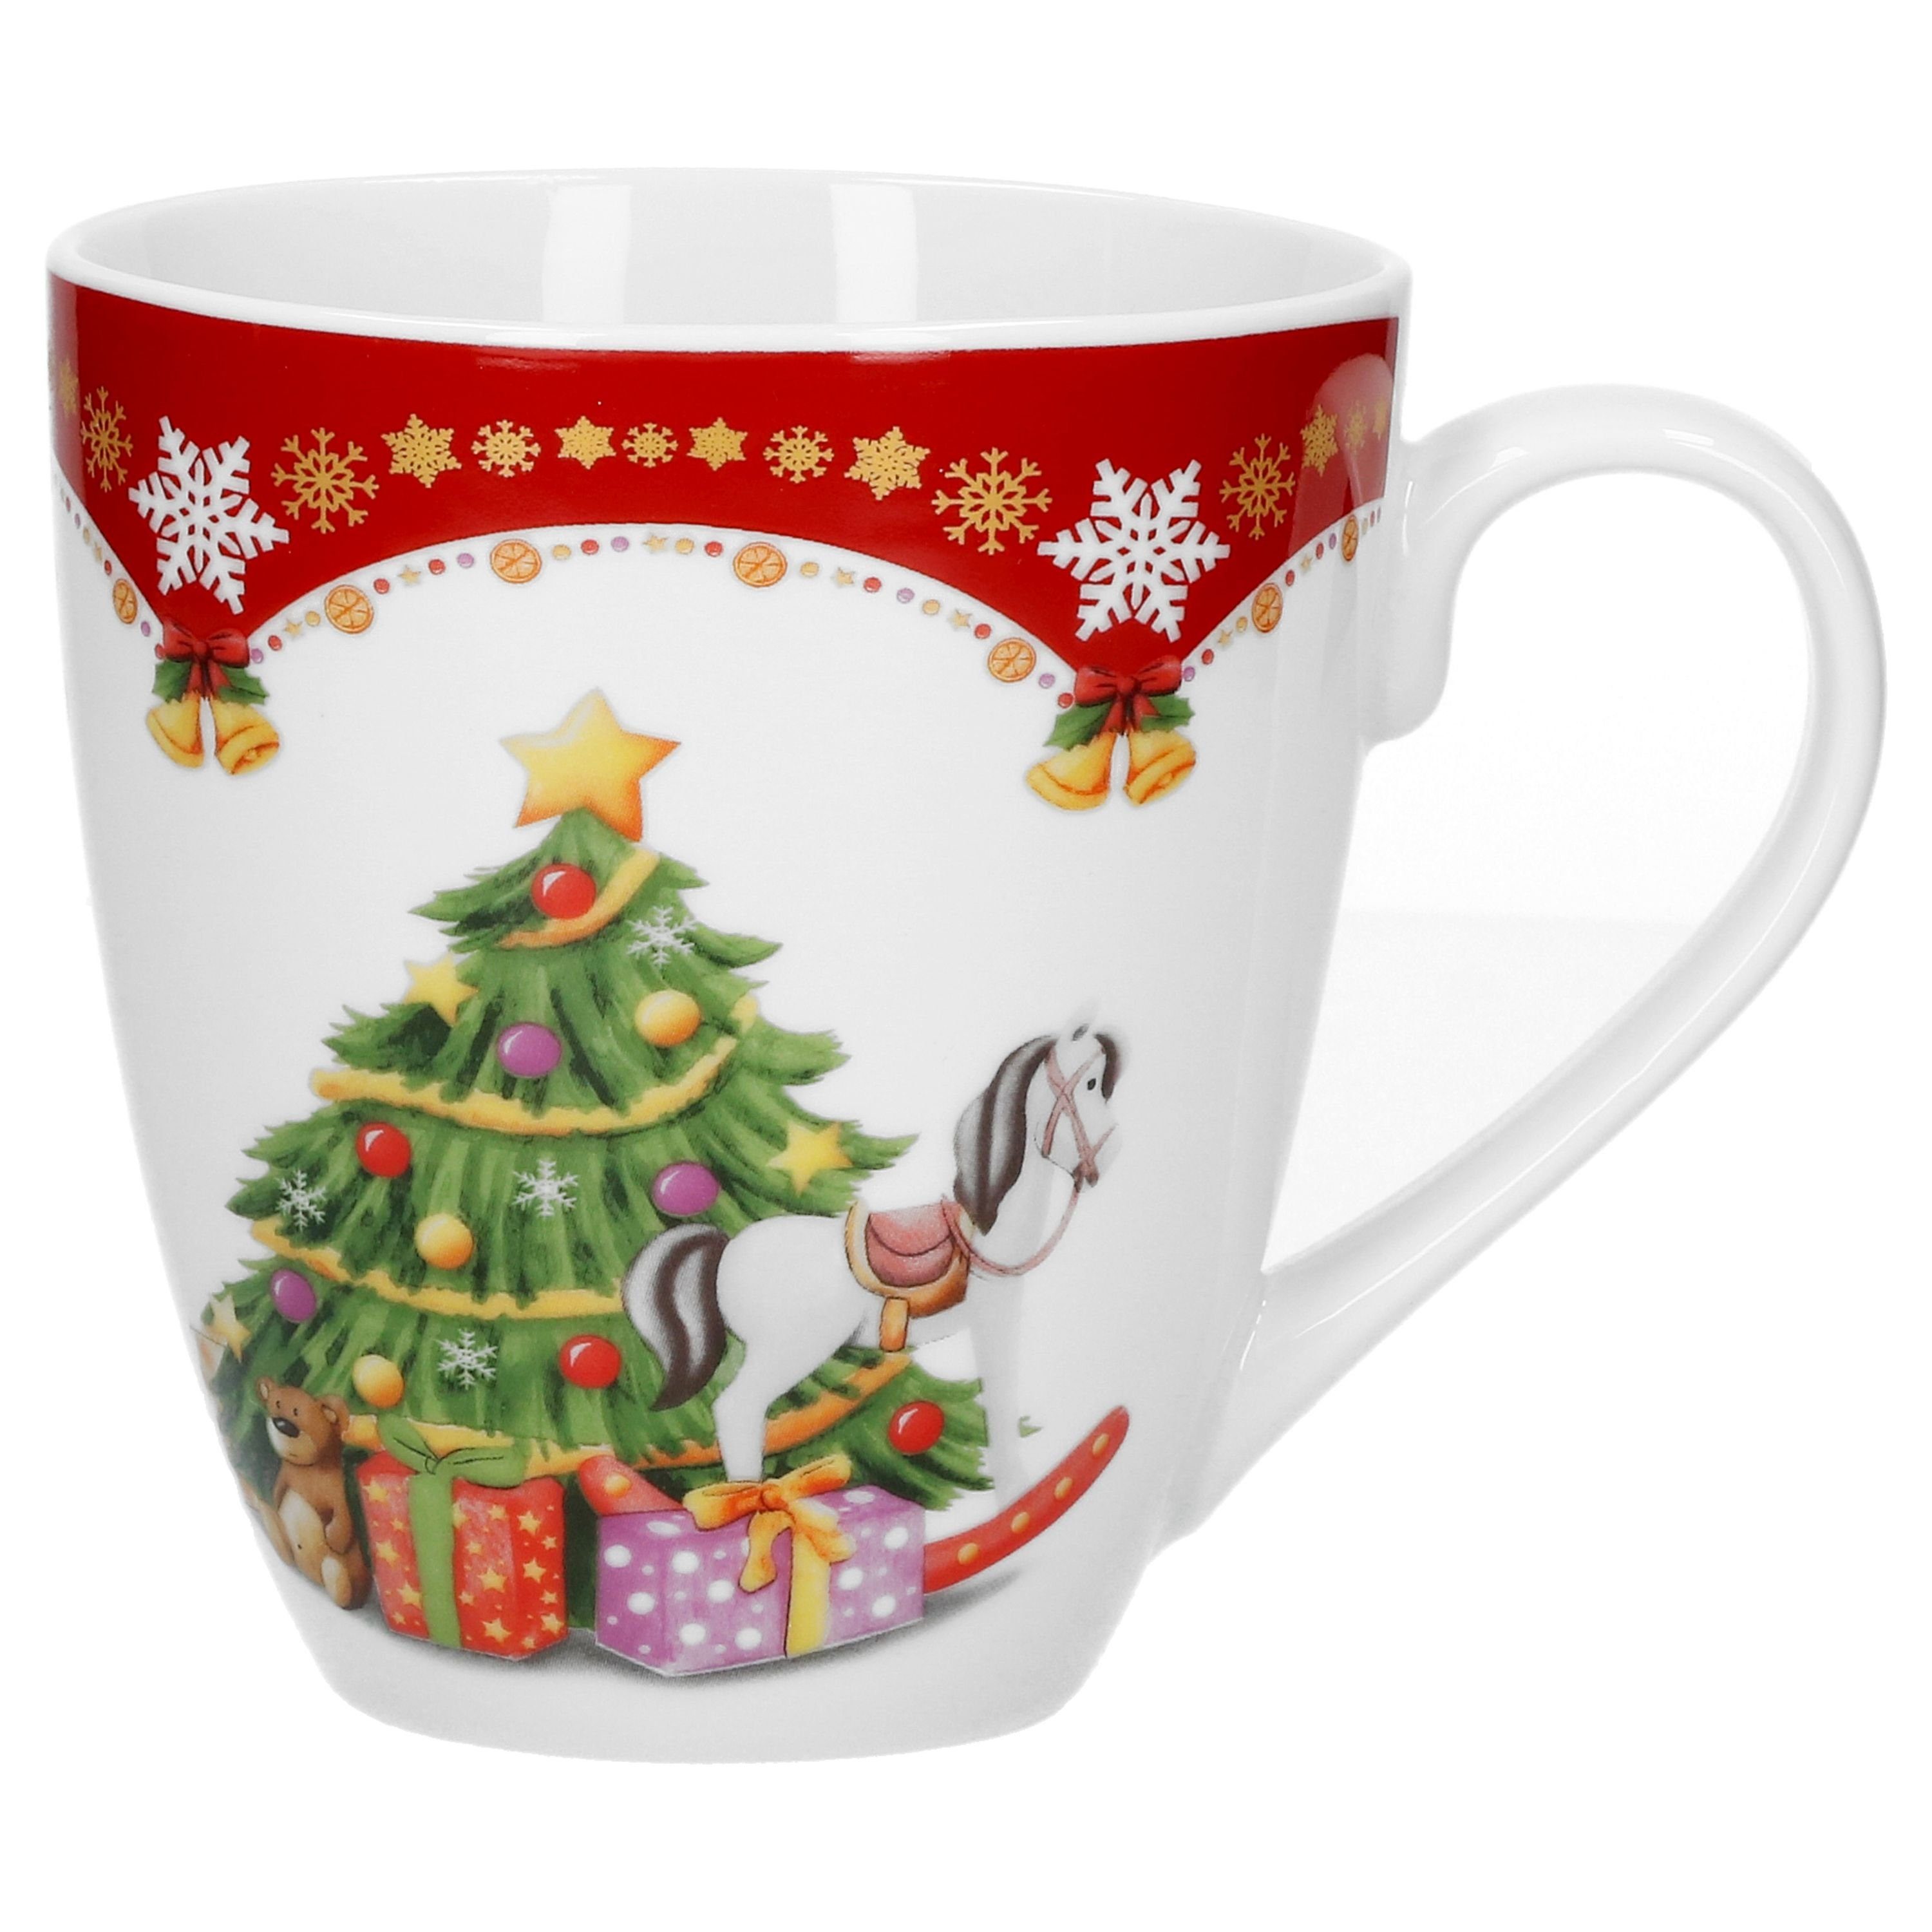 van Well Kaffeebecher 53cl, Becher Weihnachtszauber Porzellan